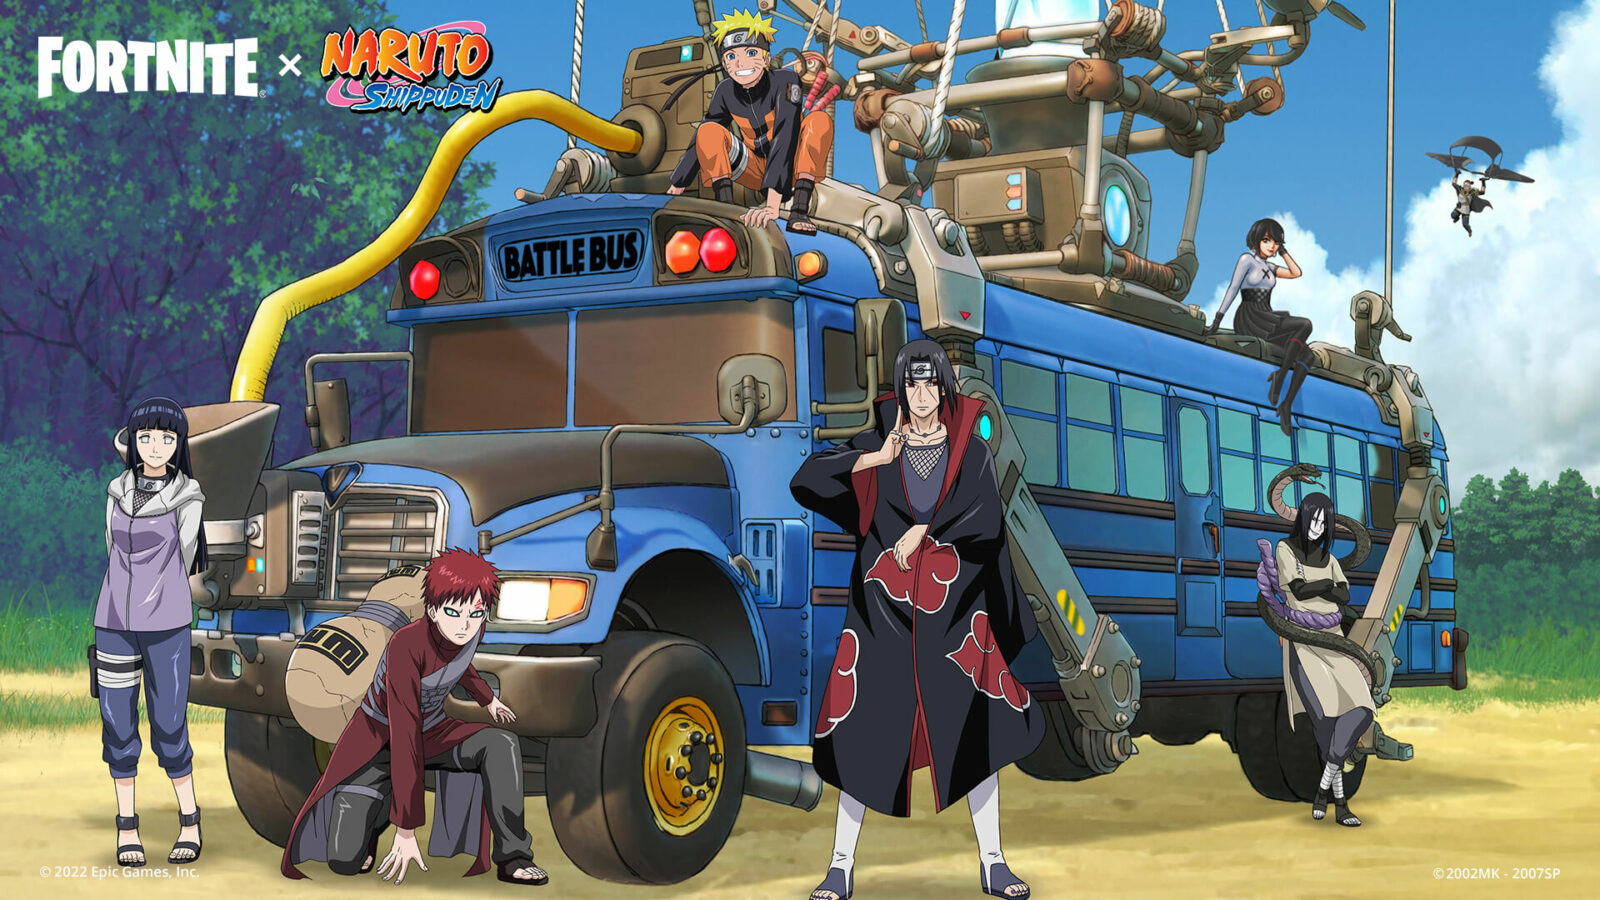 Continua la collaborazione tra Fortnite x Naruto, che aggiungono nuovi personaggi al gioco